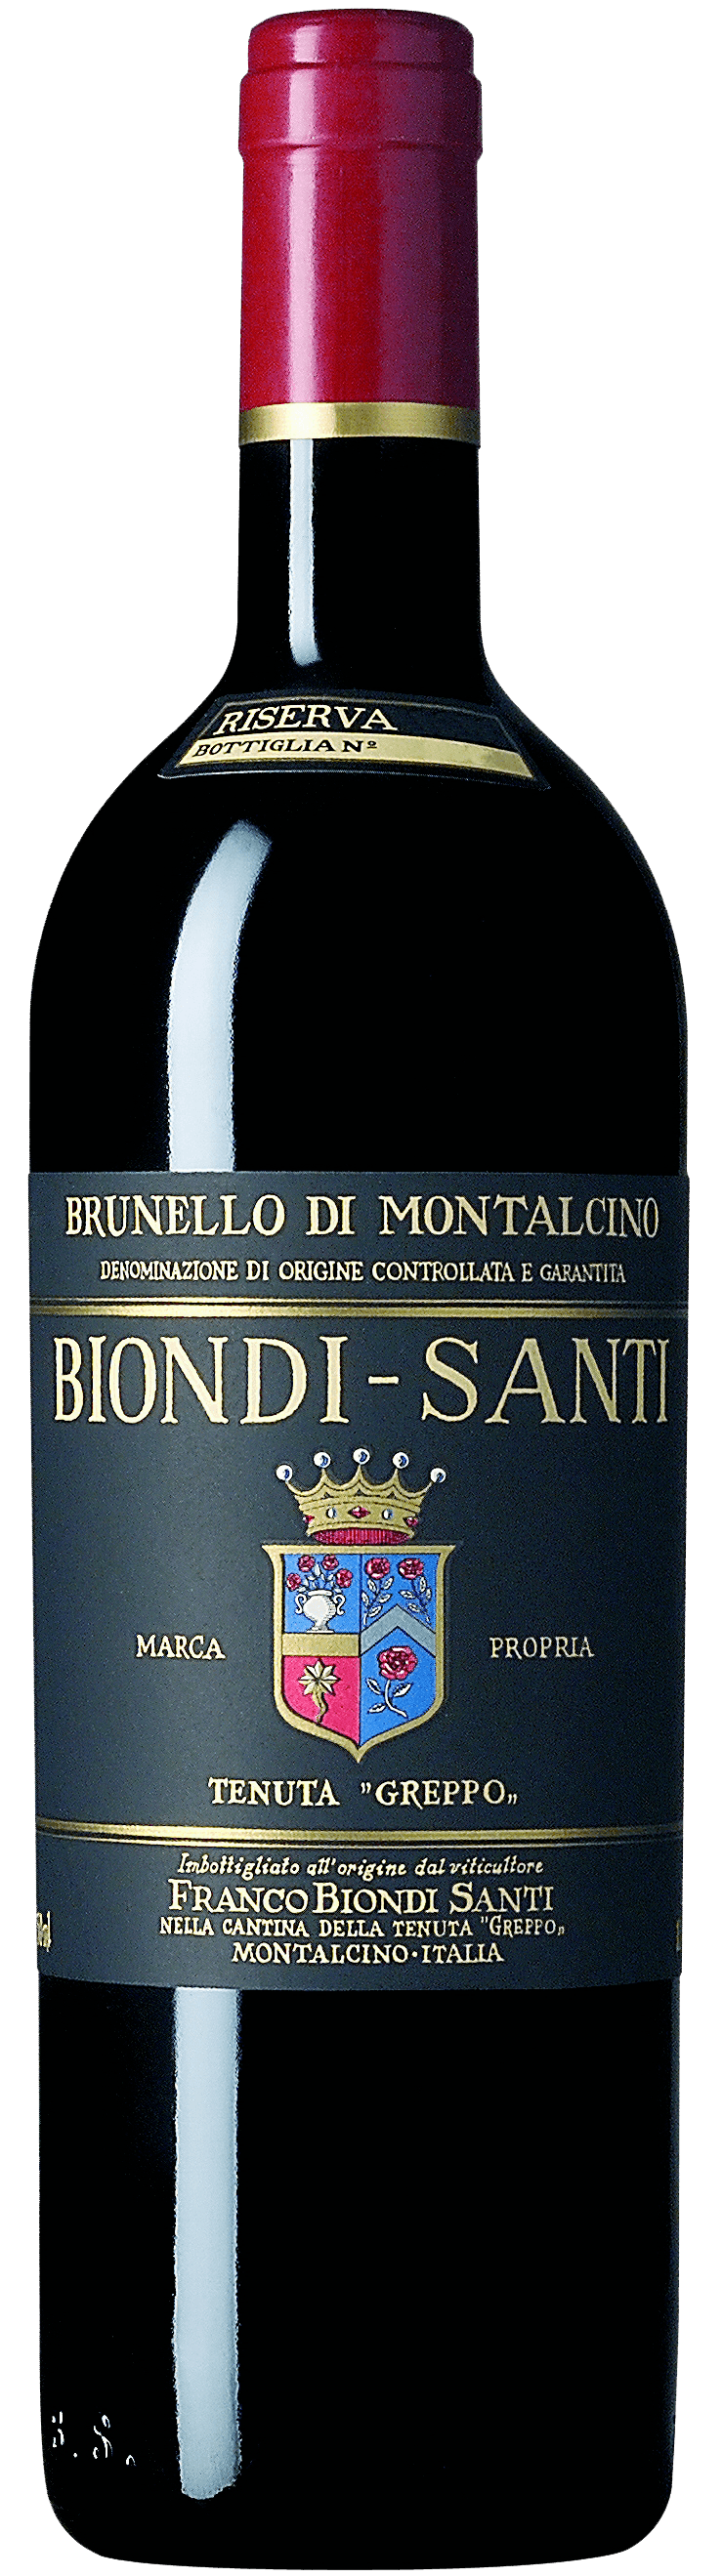 2015 Biondi-Santi Brunello di Montalcino Riserva DOCG